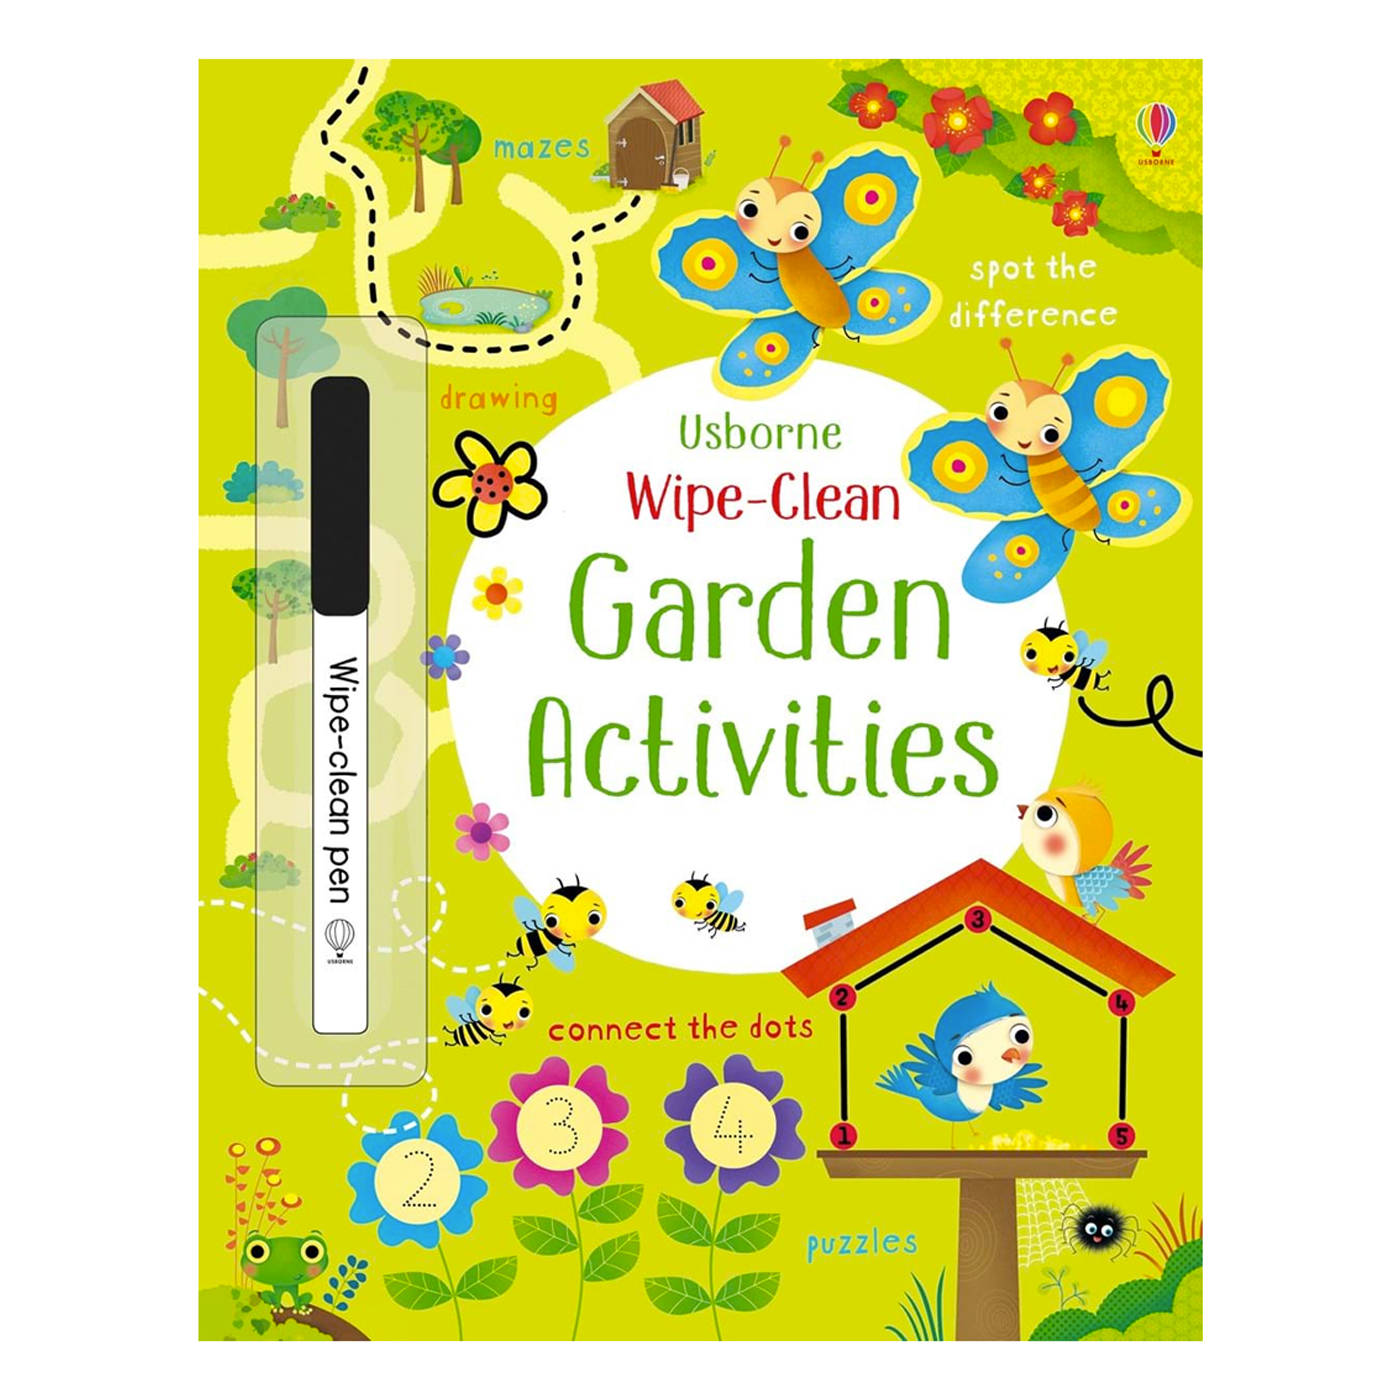  Wipe-Clean Garden Activities